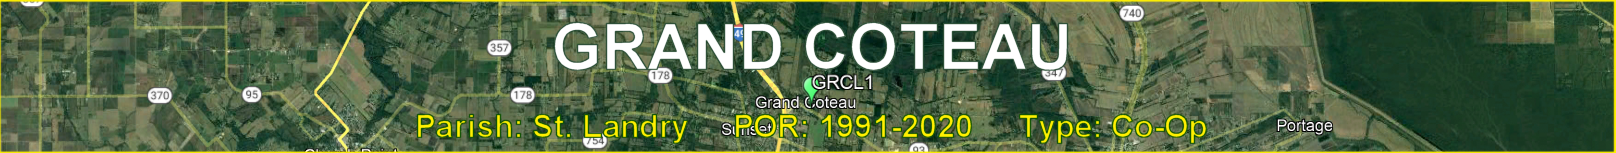 Title image for Grand Coteau